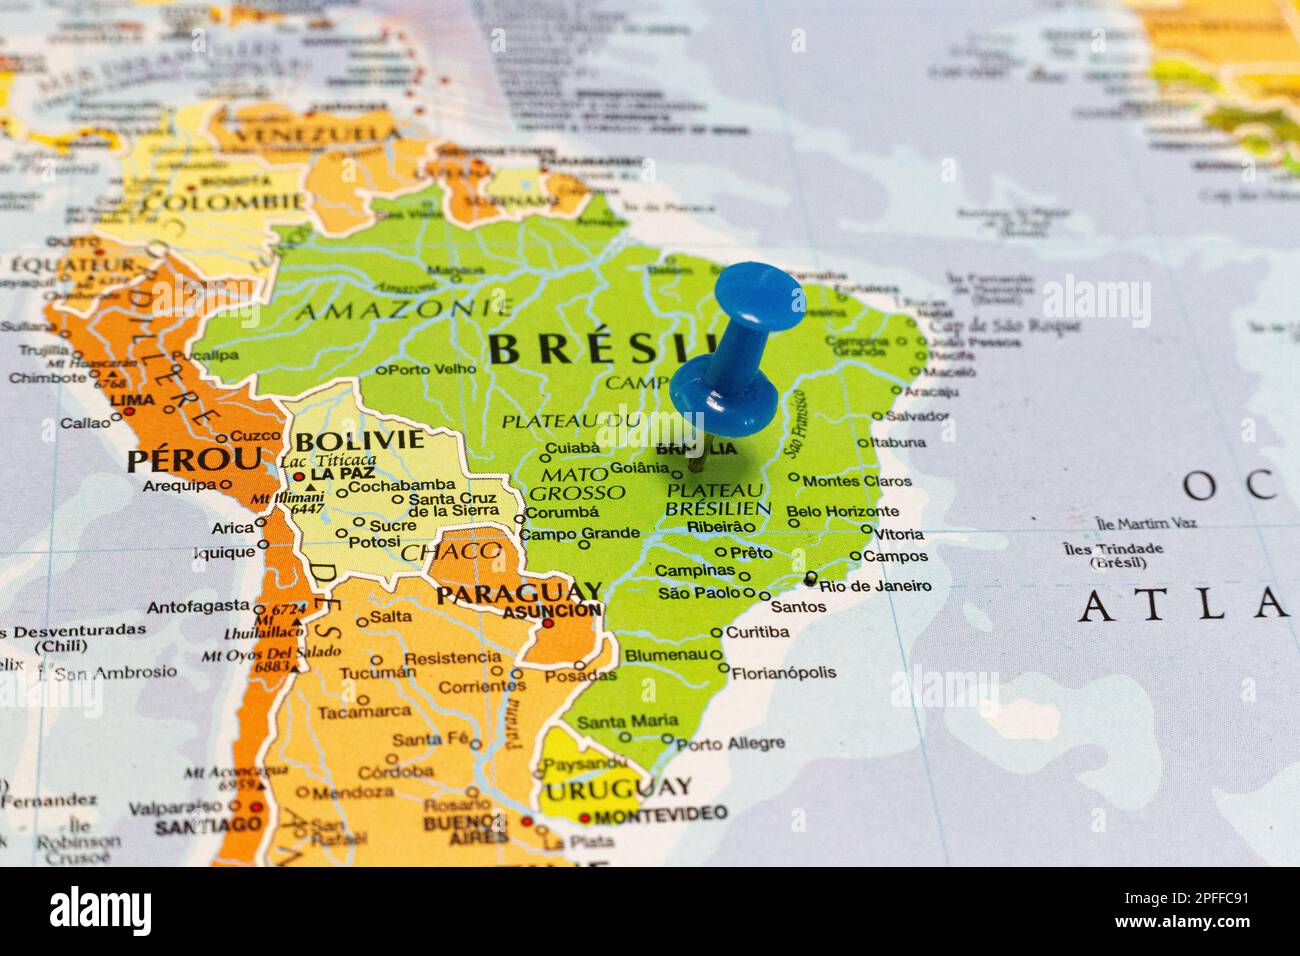 Lieu Brésil. Épingle bleue sur la carte. Banque D'Images